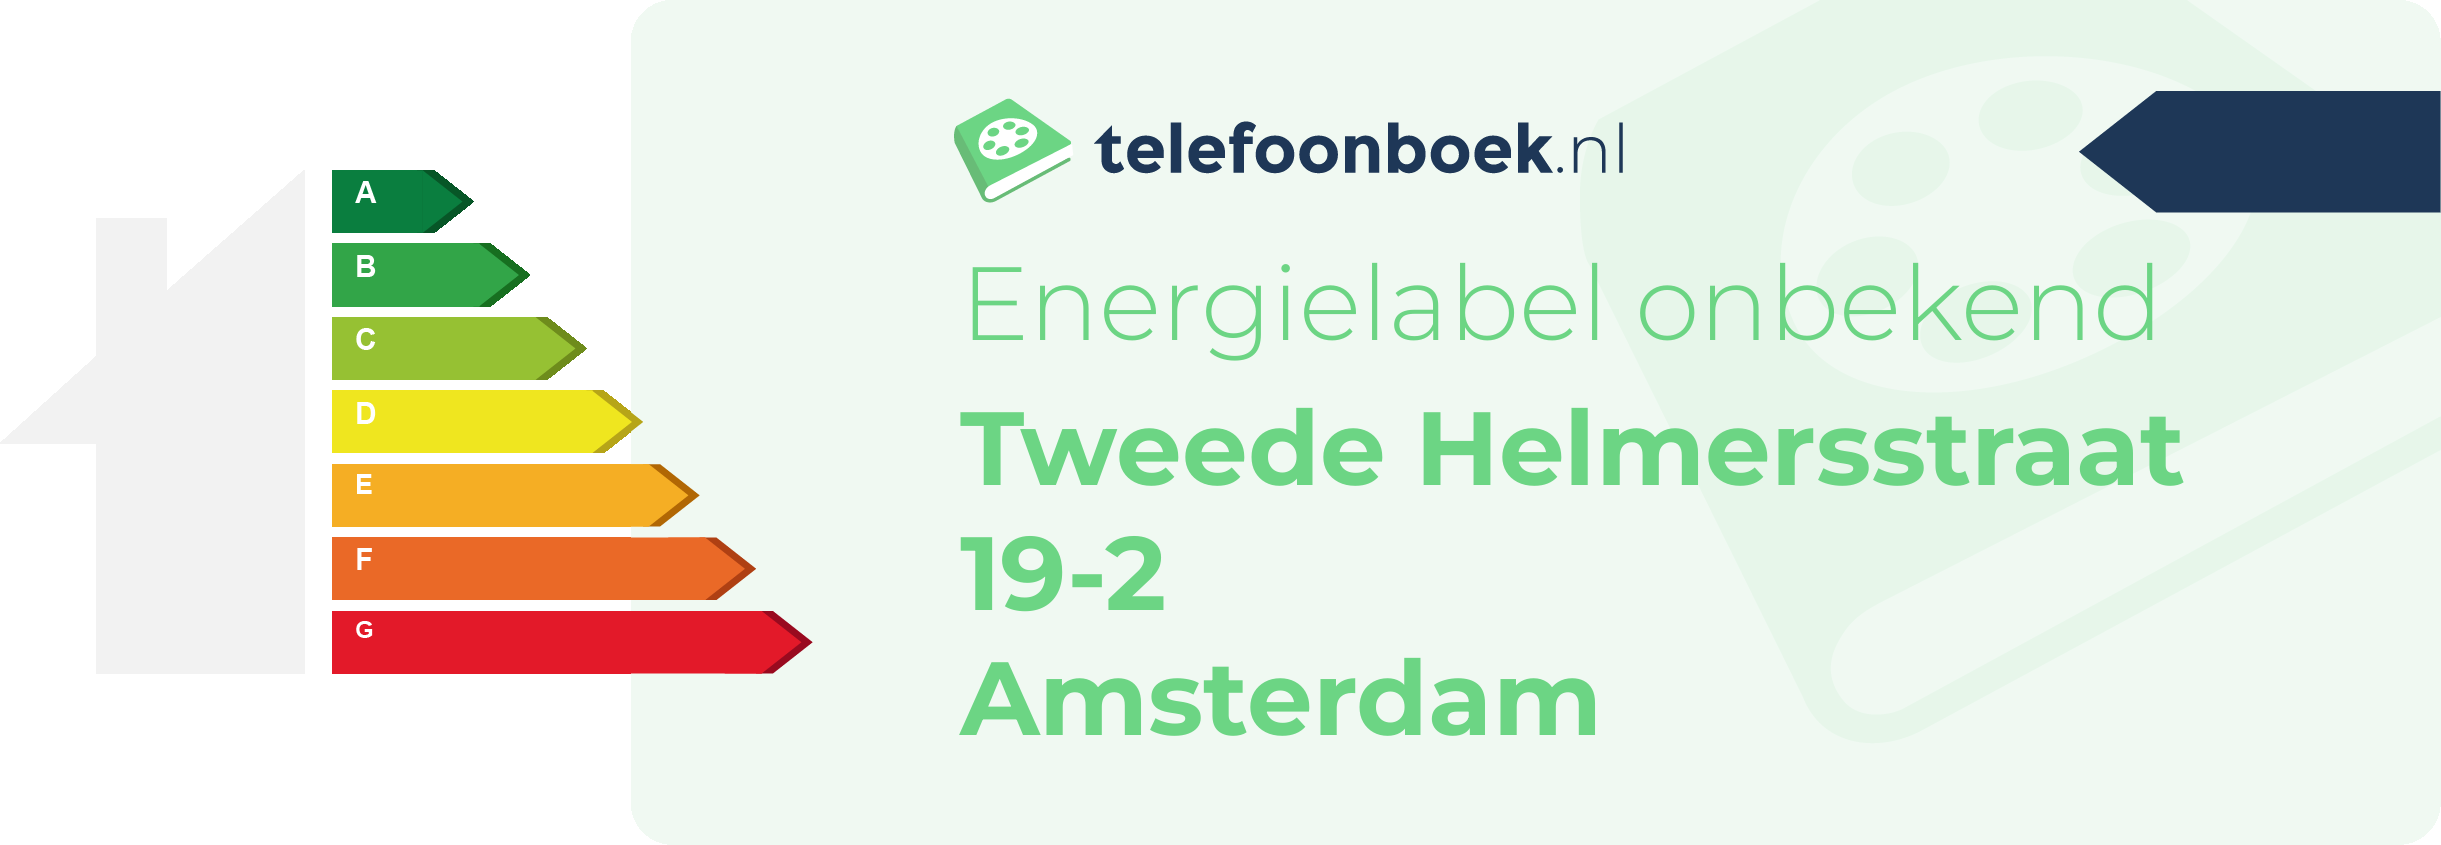 Energielabel Tweede Helmersstraat 19-2 Amsterdam